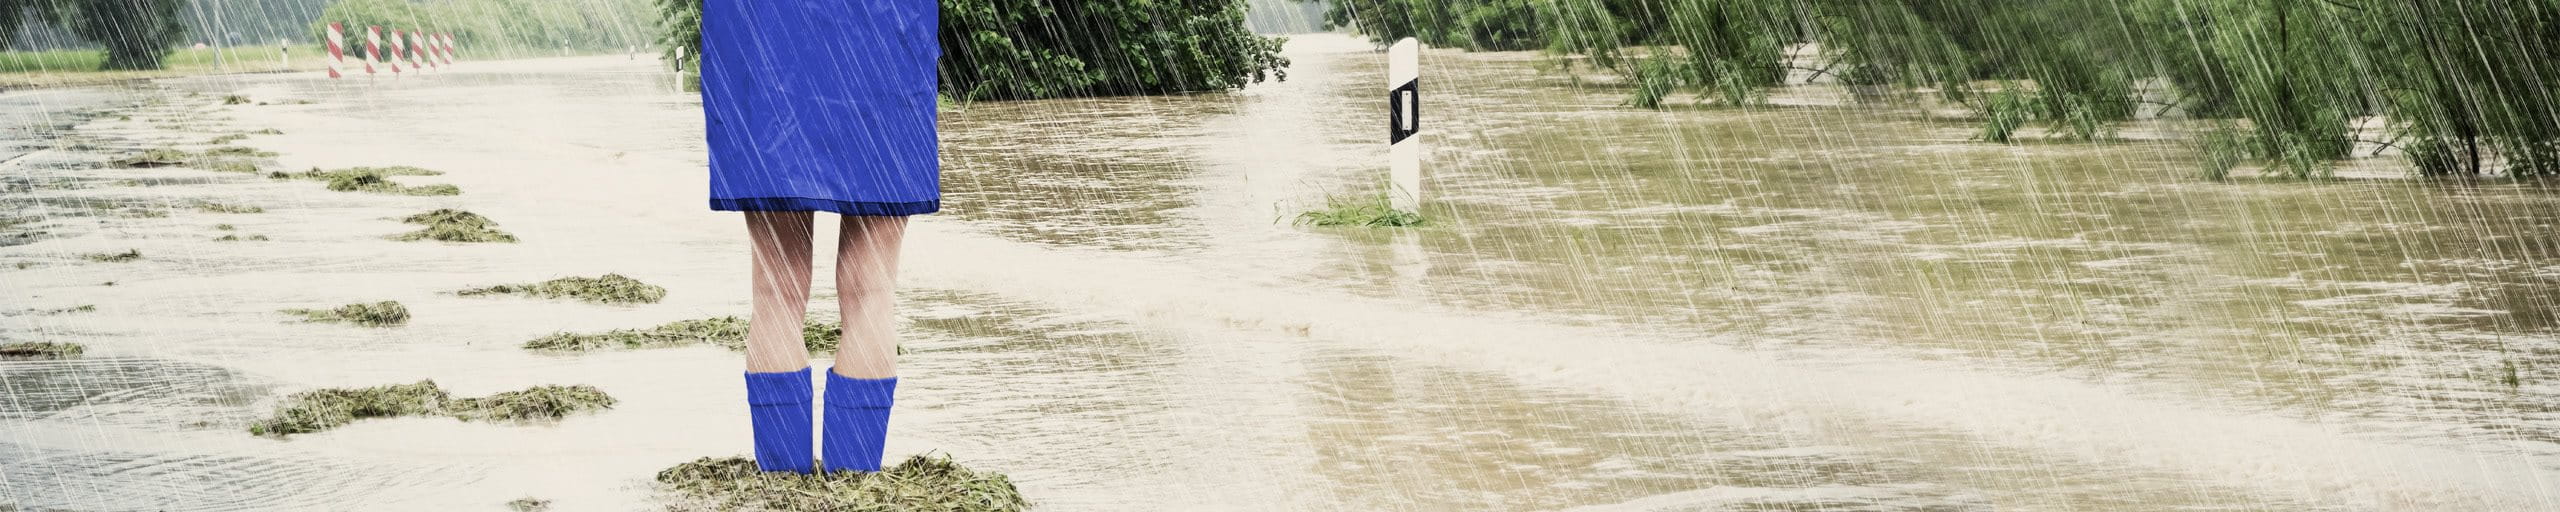 Frau steht mit Regenjacke und Gummistiefel im Hochwasser